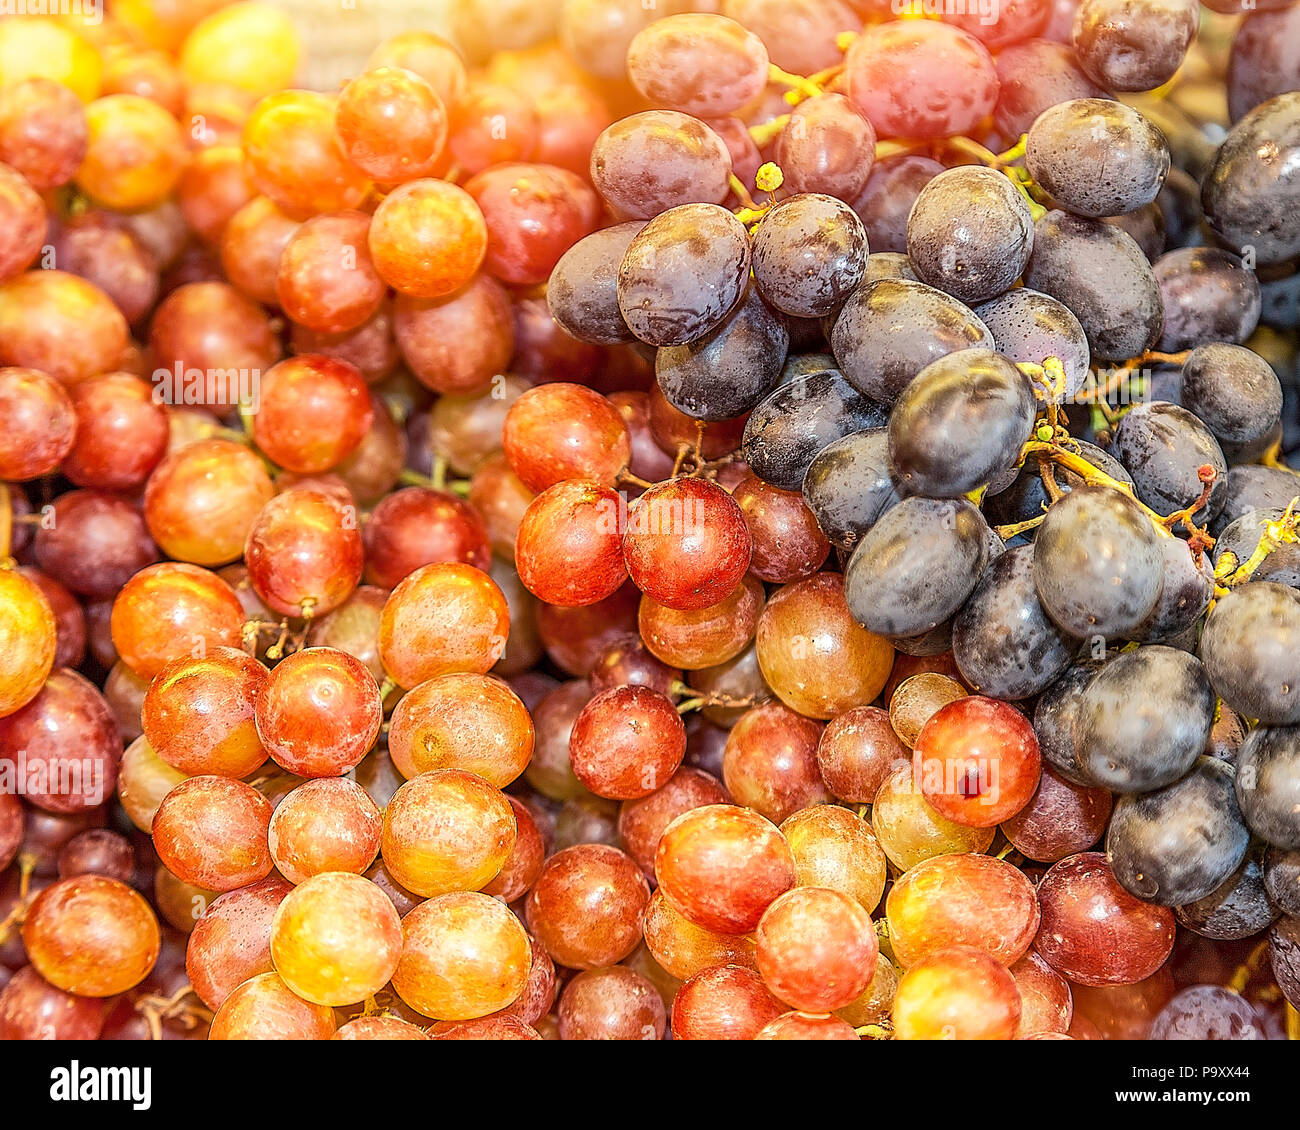 L'uva appena raccolta dalla vigna. Immagine di stock Foto Stock